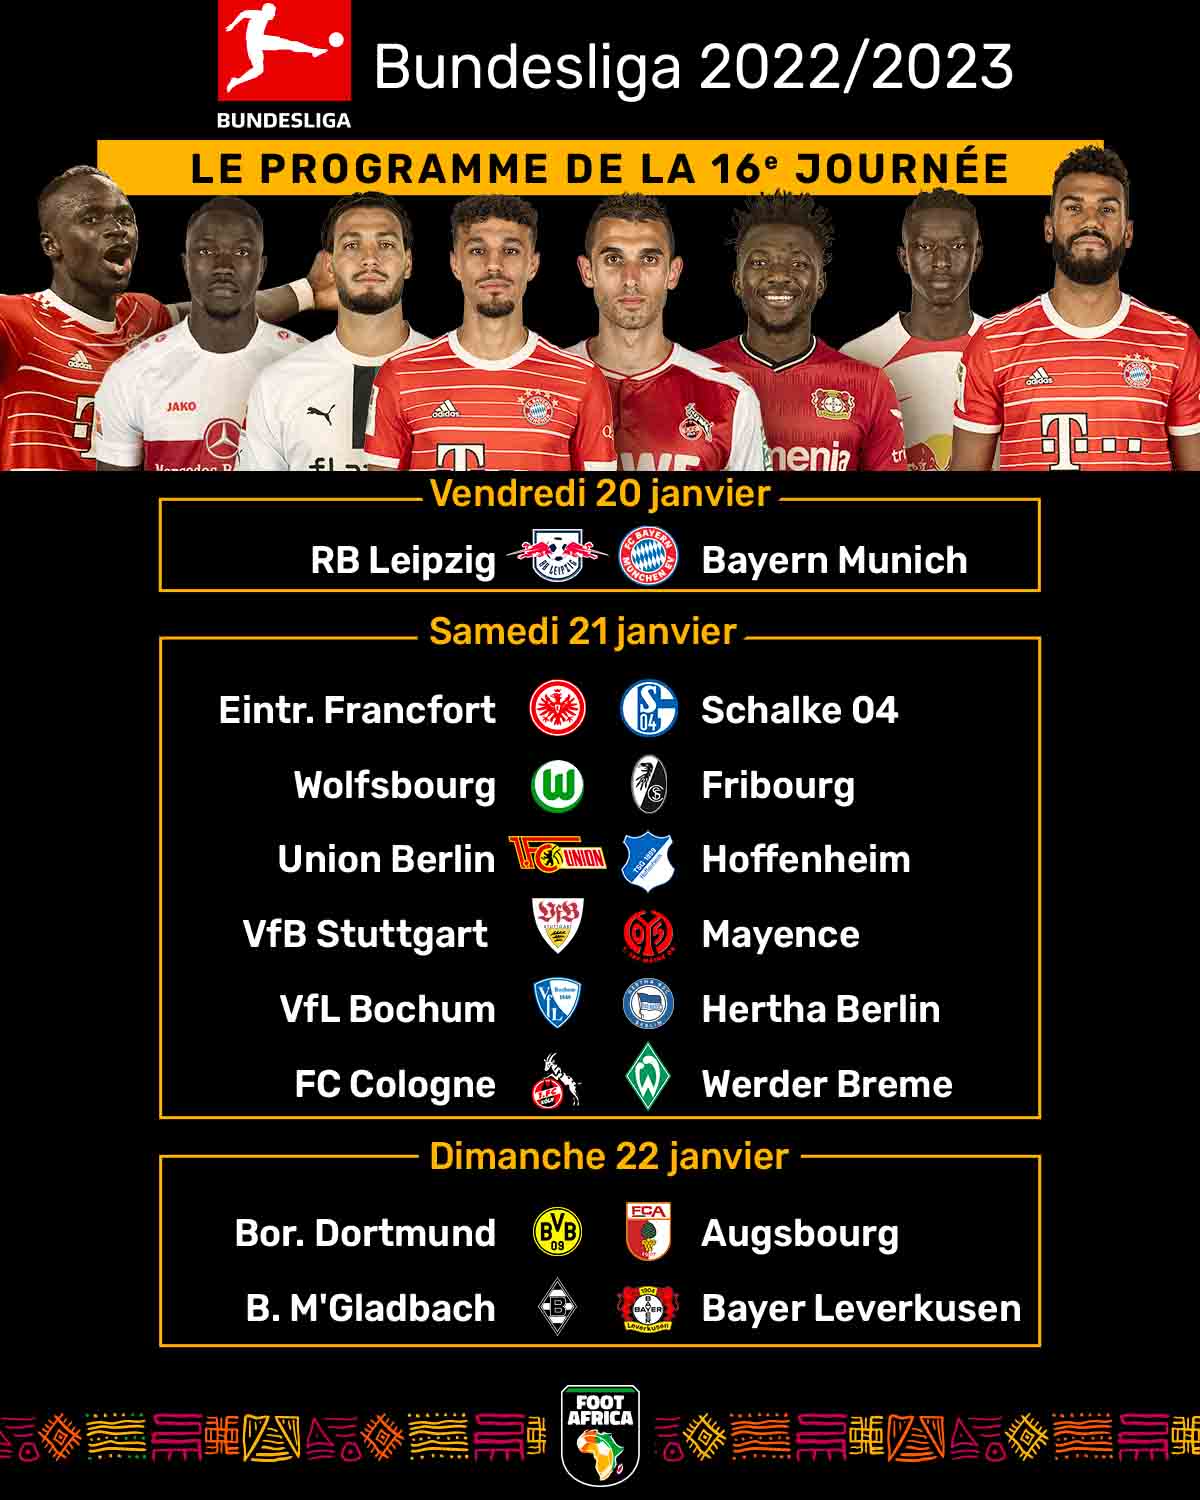 Bundesliga - Le programme de la 16e journée